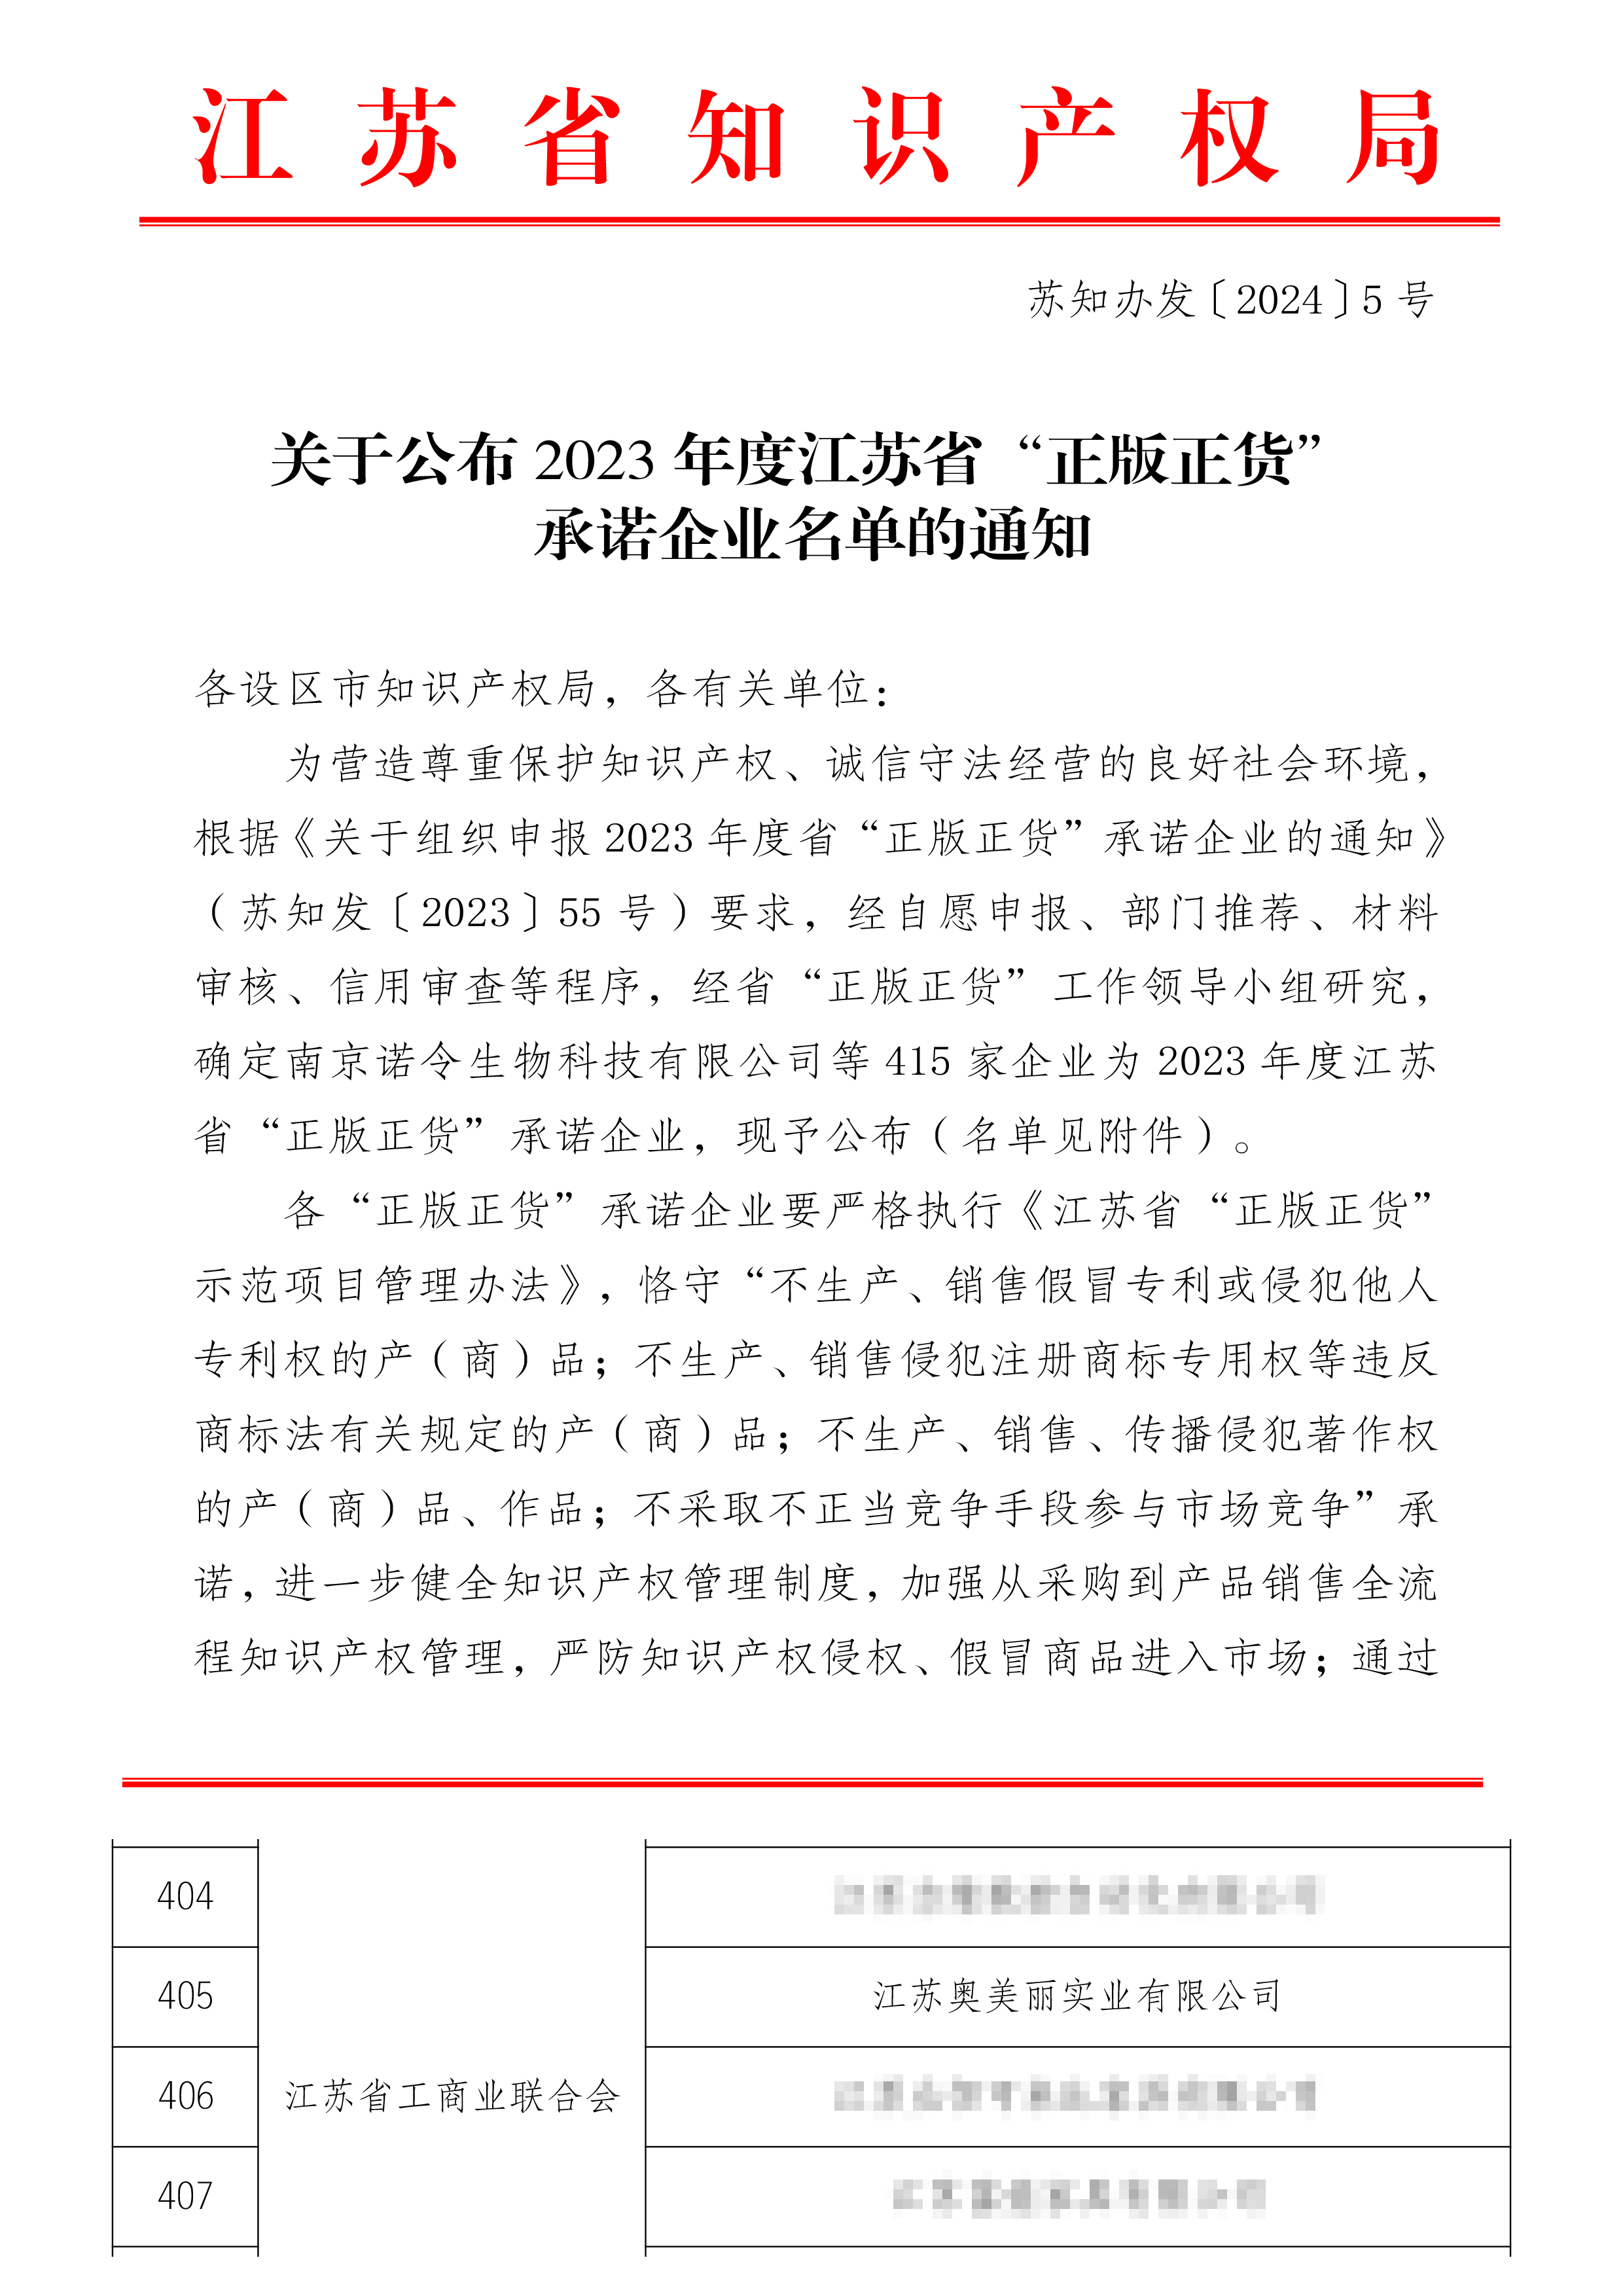 2023年度江苏省“正版正货”承诺企业